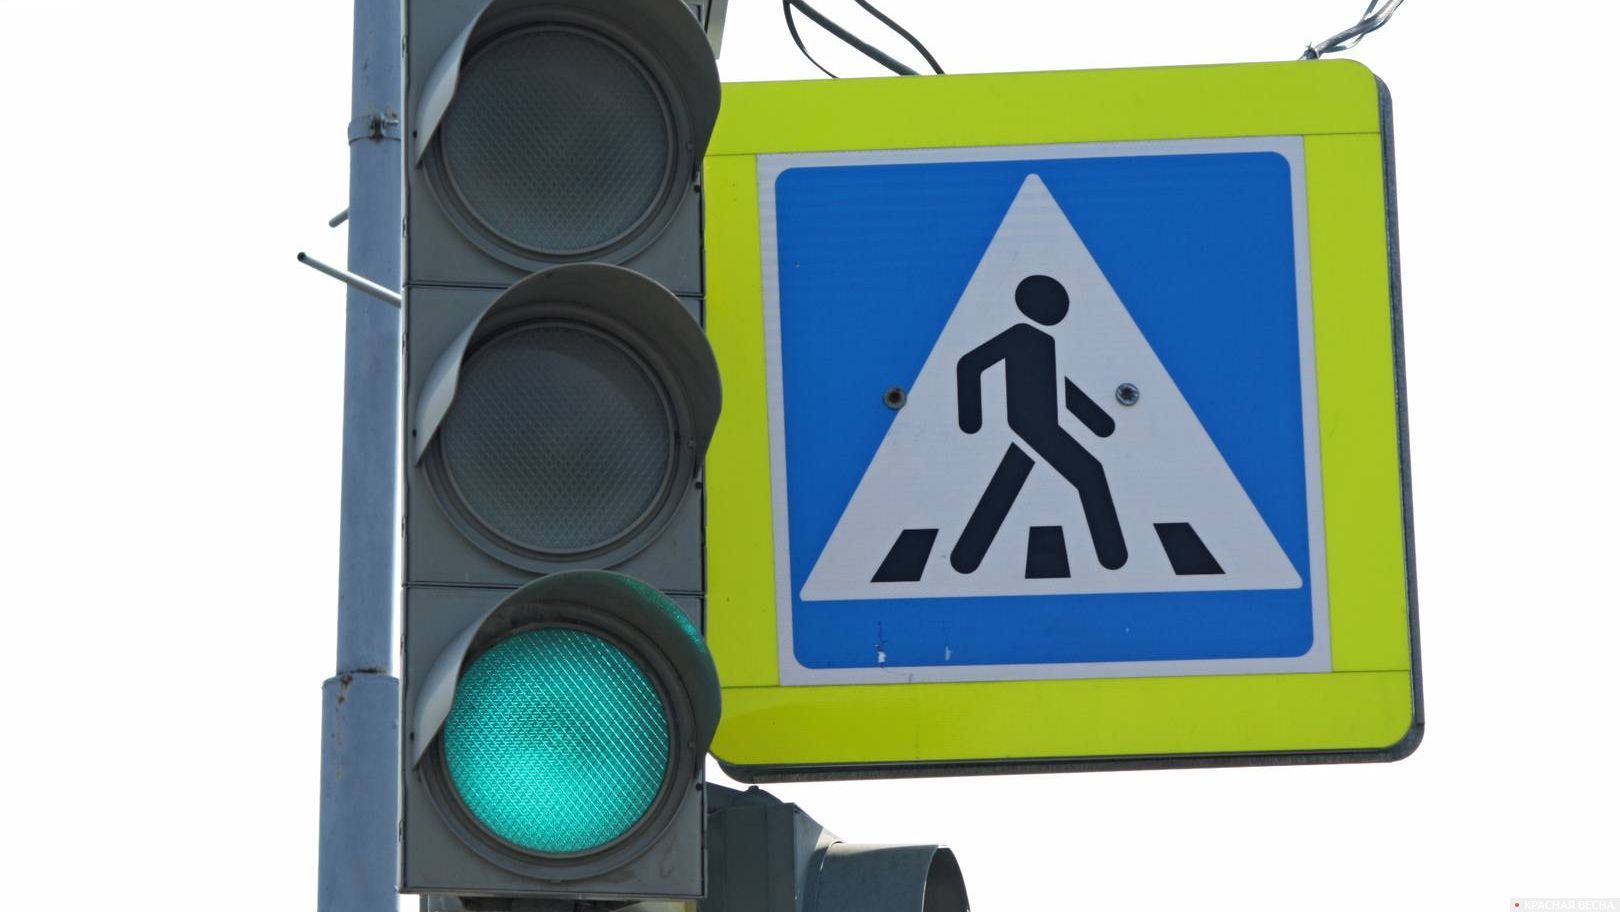 Зеленый сигнал светофора и пешеходный переход